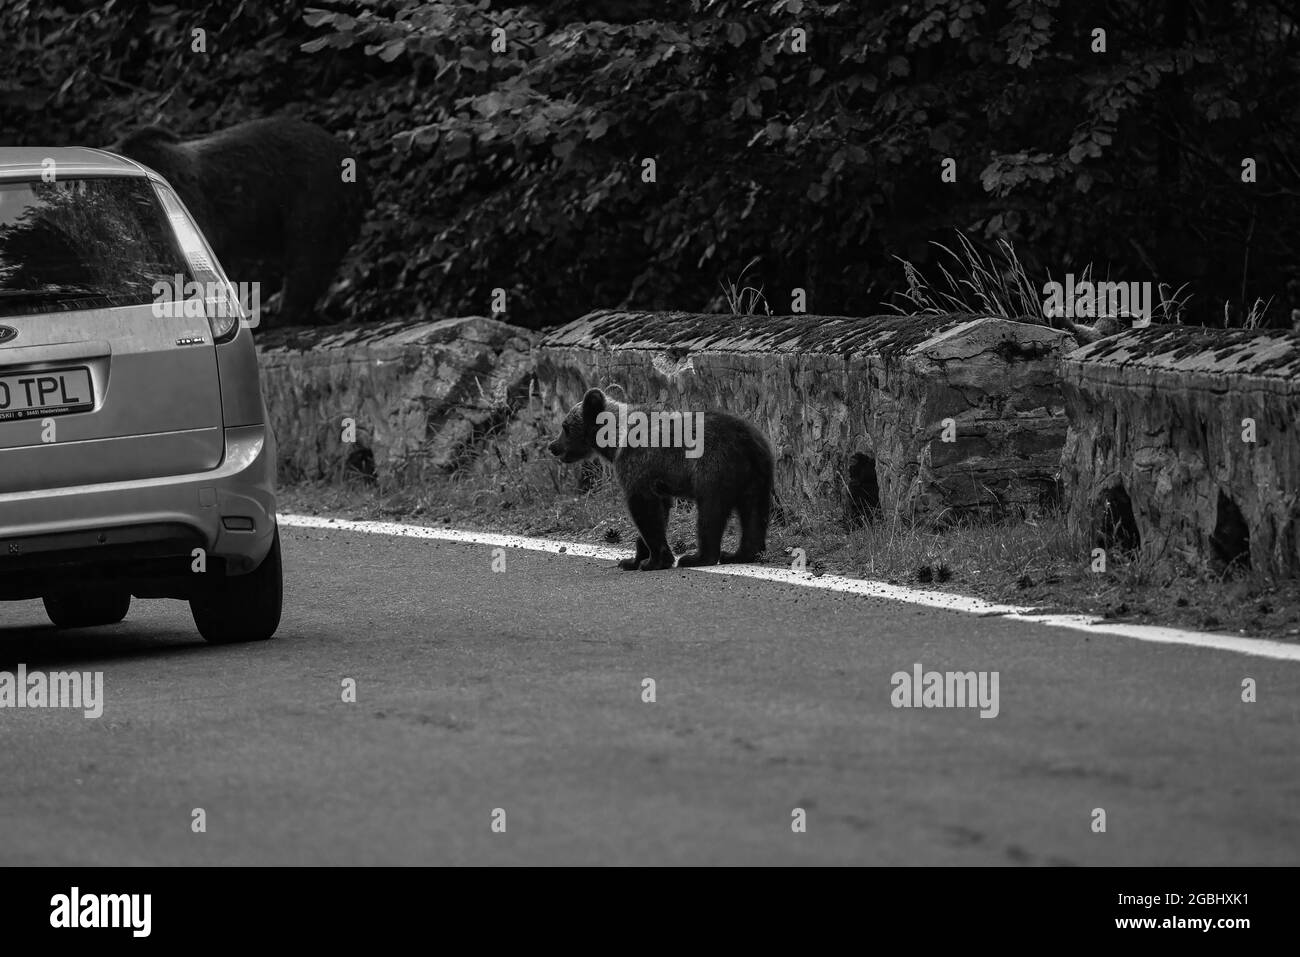 L'orso bruno in libertà, sempre più frequenti apparizioni in luoghi popolati in Romania (Transfagaraseanul). Foto Stock